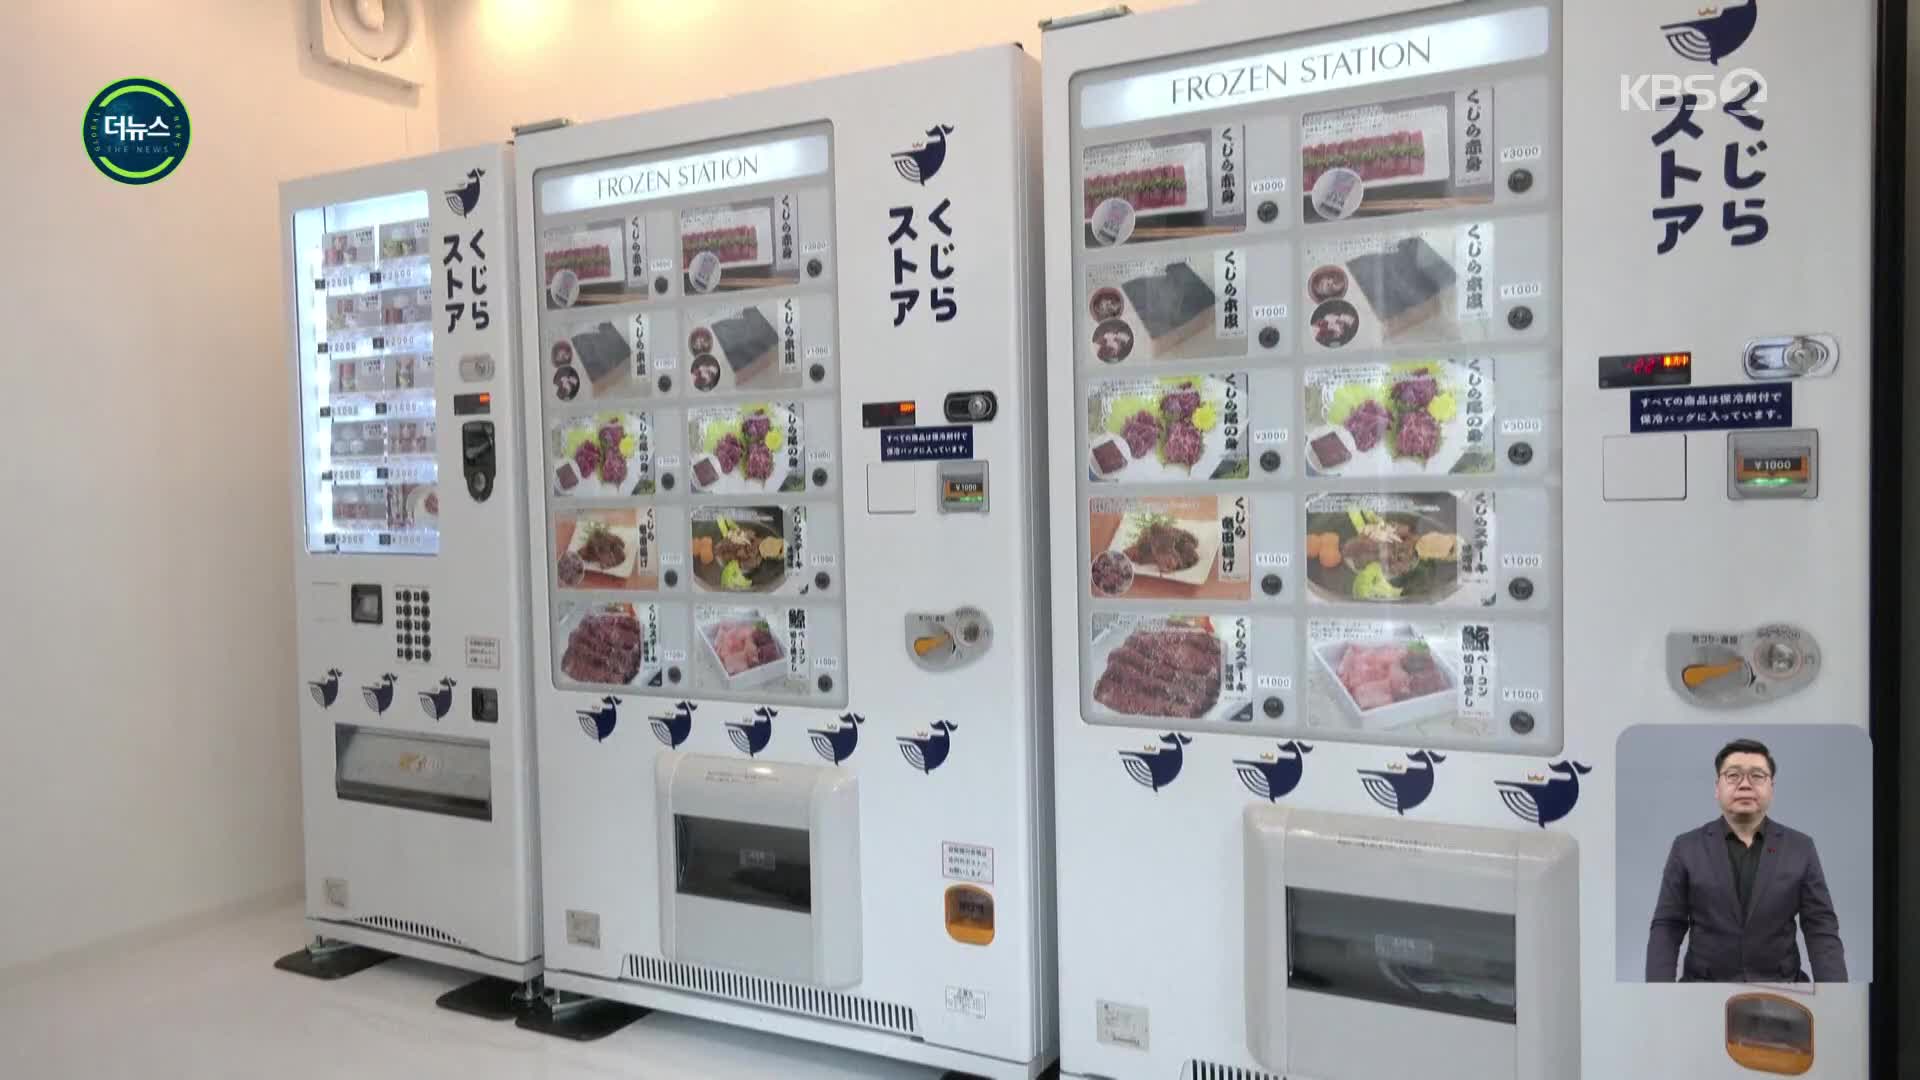 [지구촌 더뉴스] 일본 ‘고래고기 자판기’ 등장…국제사회 비난 잇따라